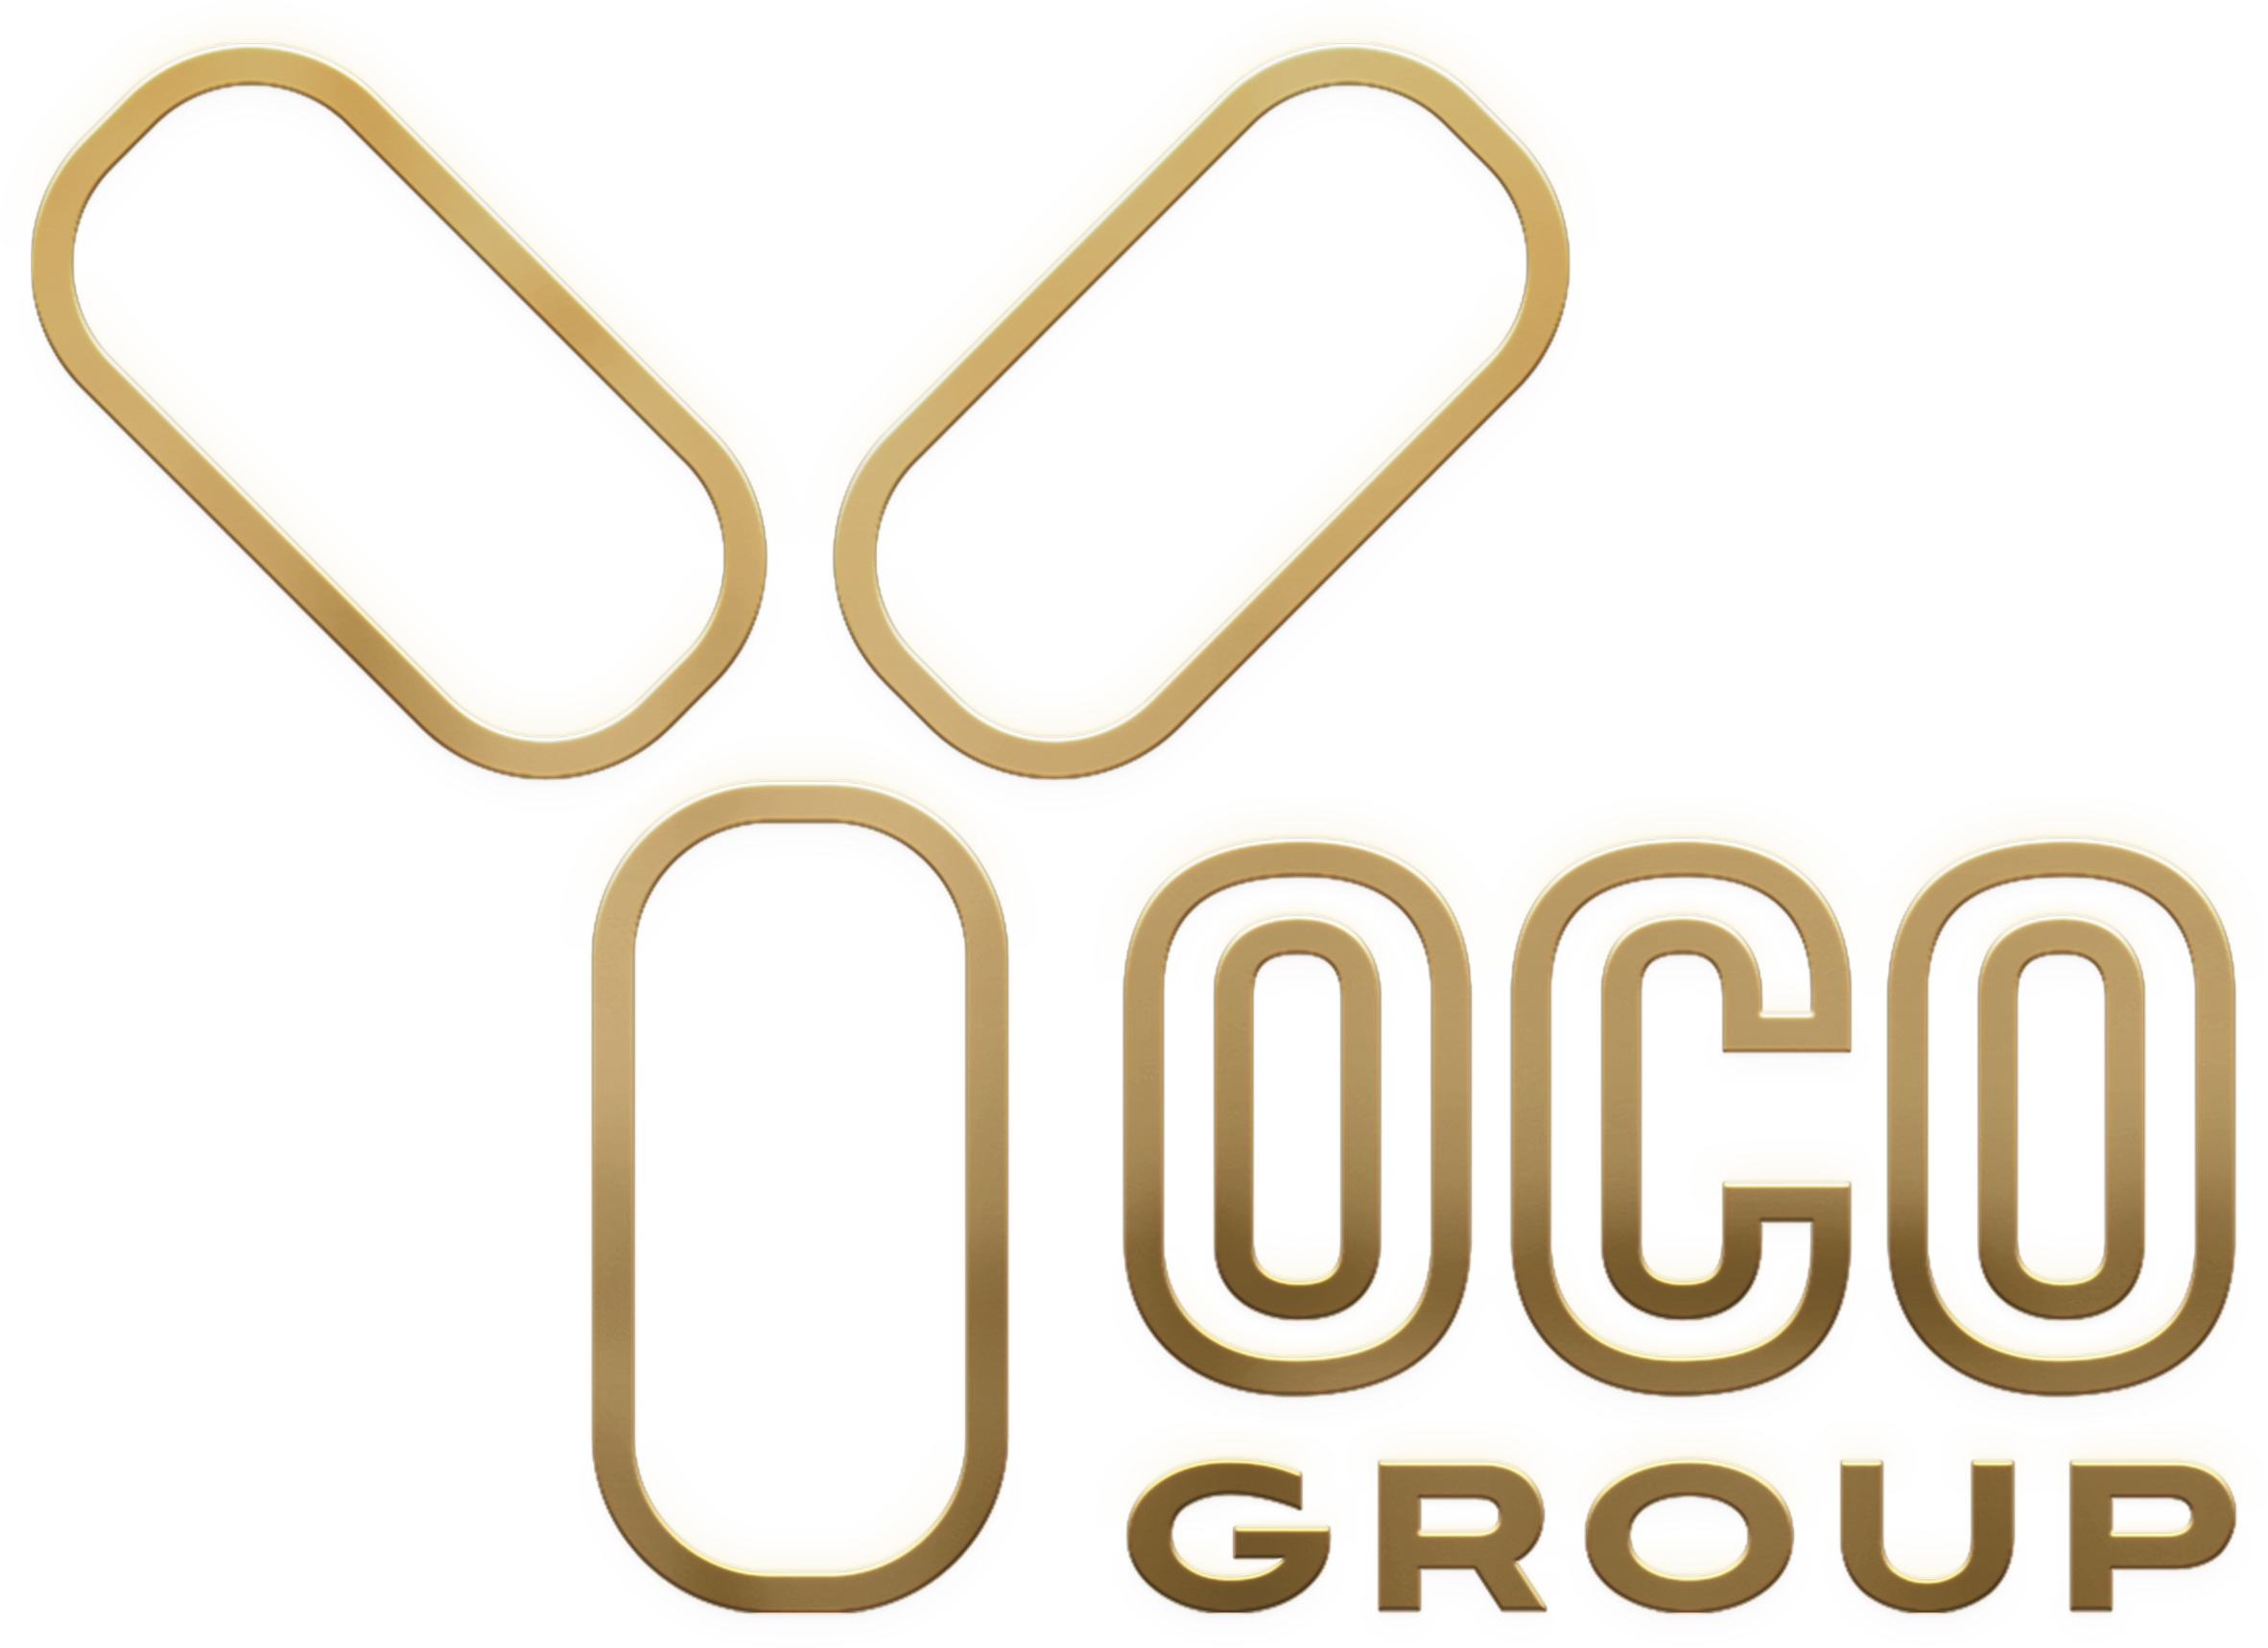 Yoco Group